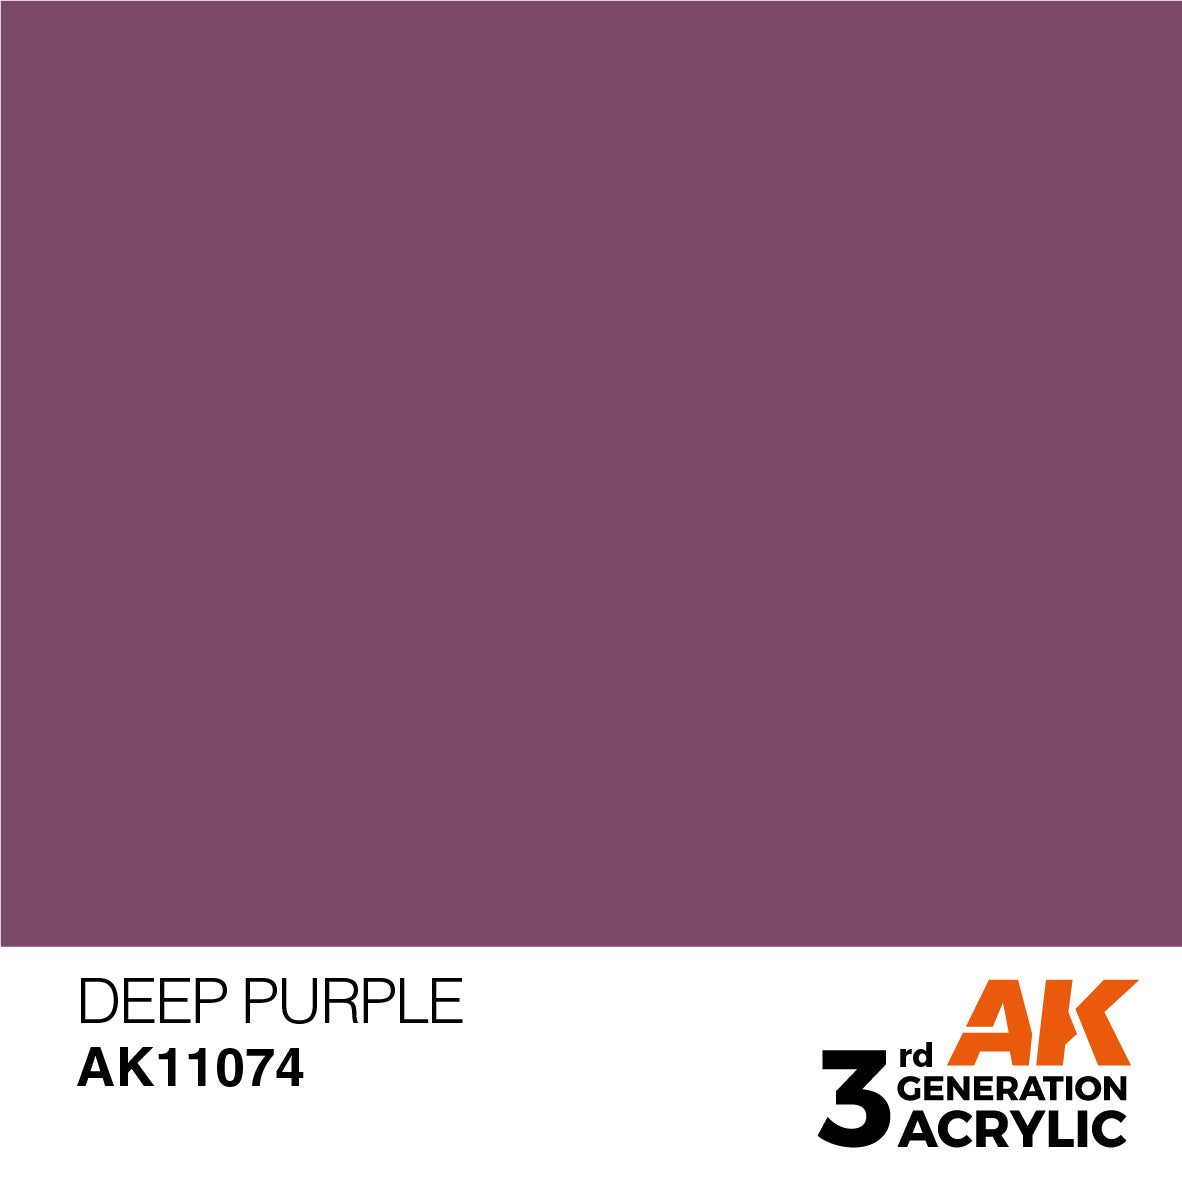 AK11074 Deep Purple